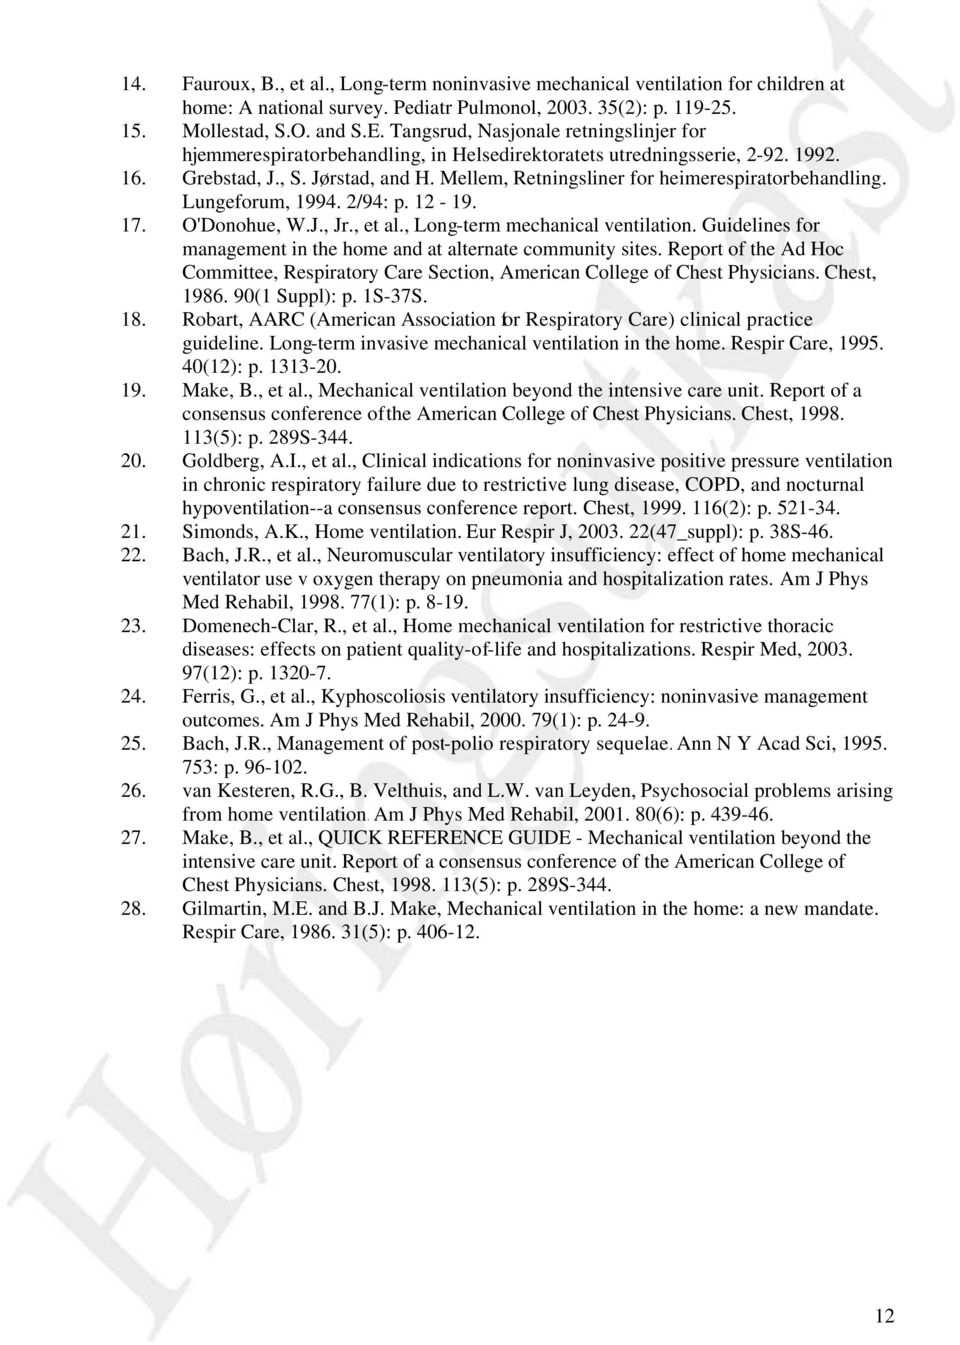 Mellem, Retningsliner for heimerespiratorbehandling. Lungeforum, 1994. 2/94: p. 12-19. 17. O'Donohue, W.J., Jr., et al., Long-term mechanical ventilation.